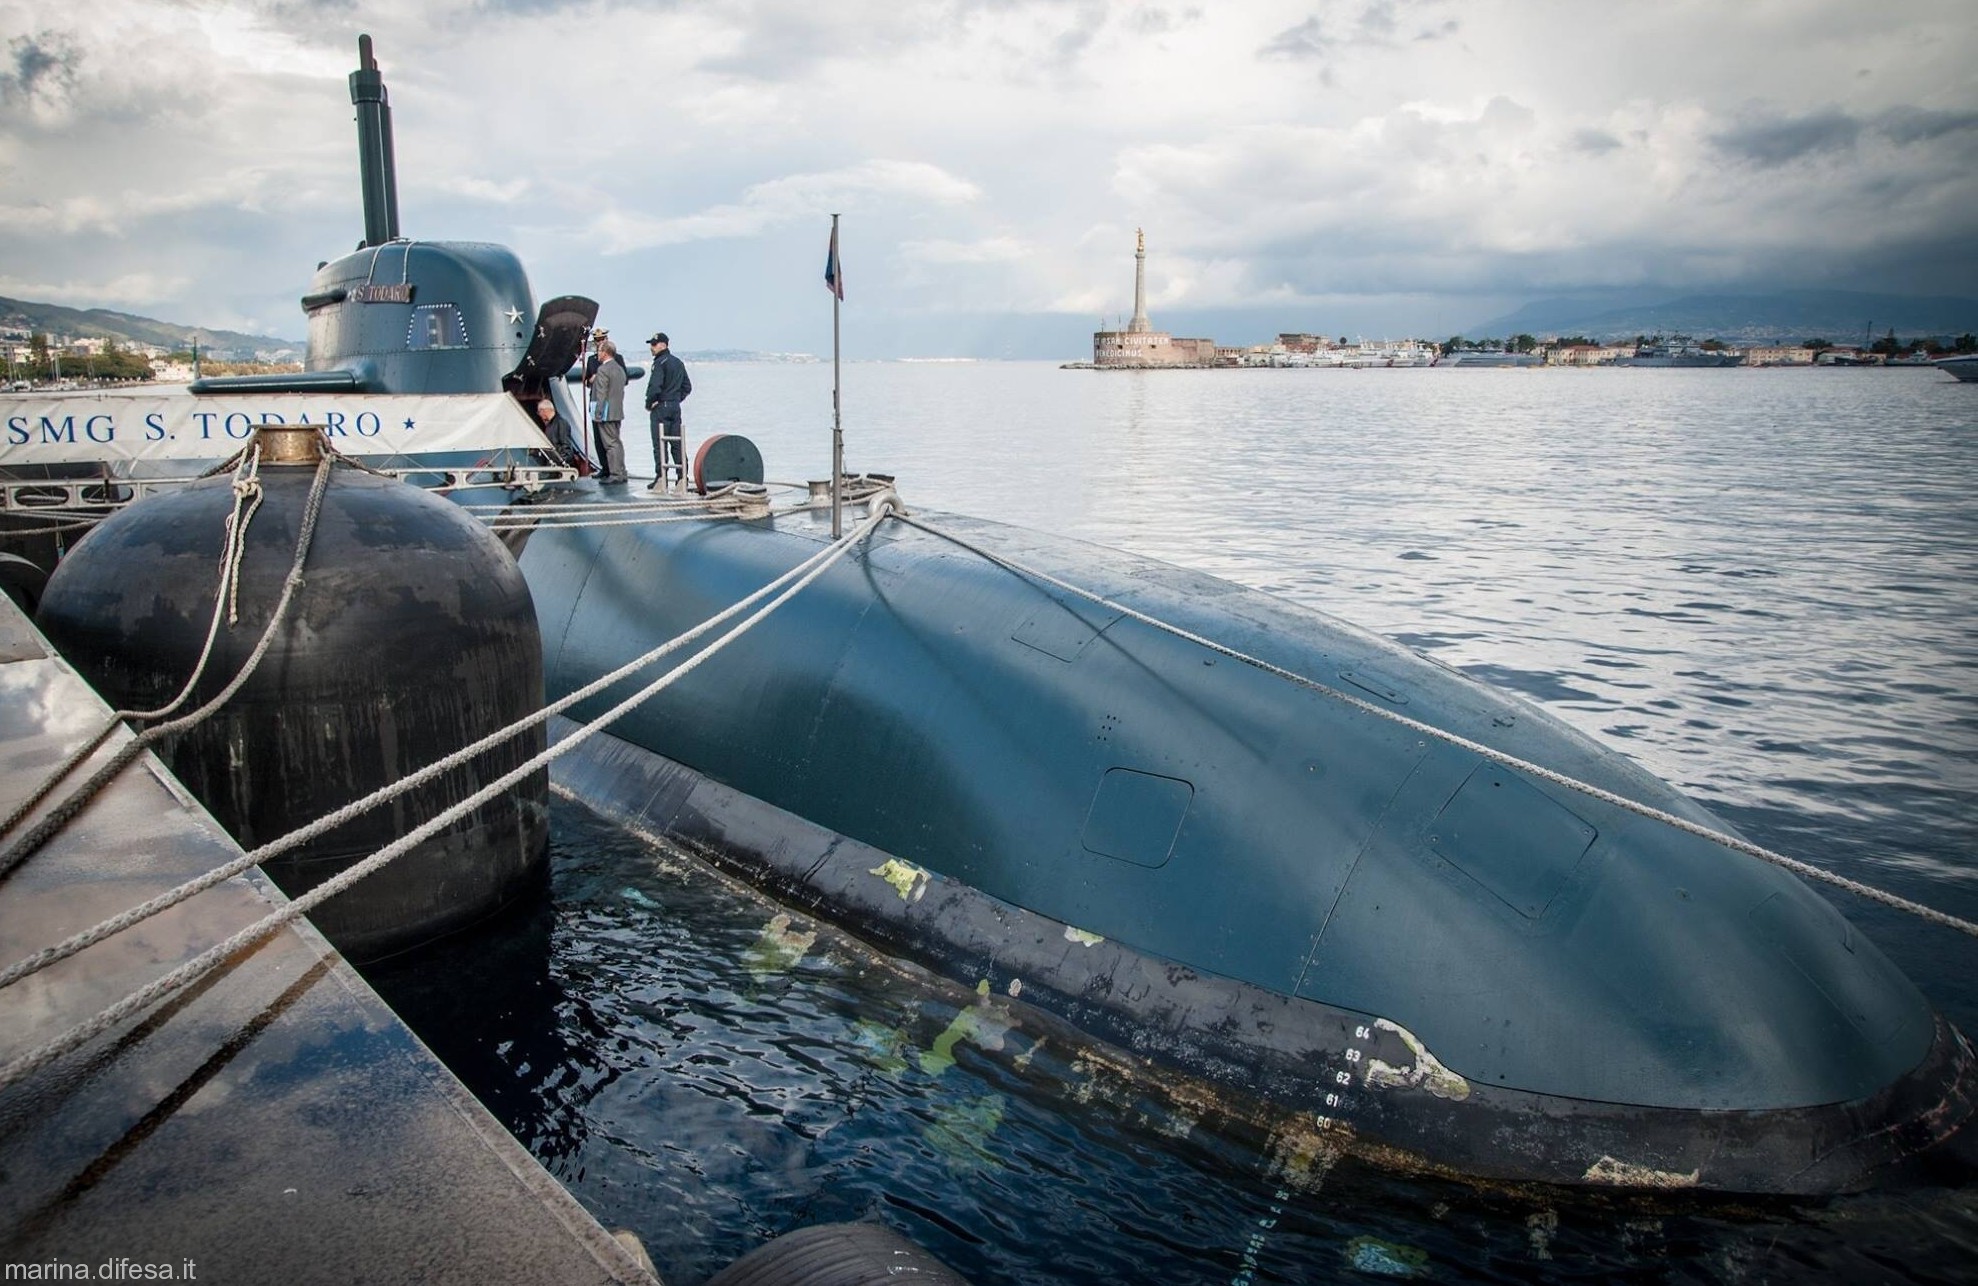 s-526 salvatore todaro its smg type 212 class submarine italian navy marina militare 23